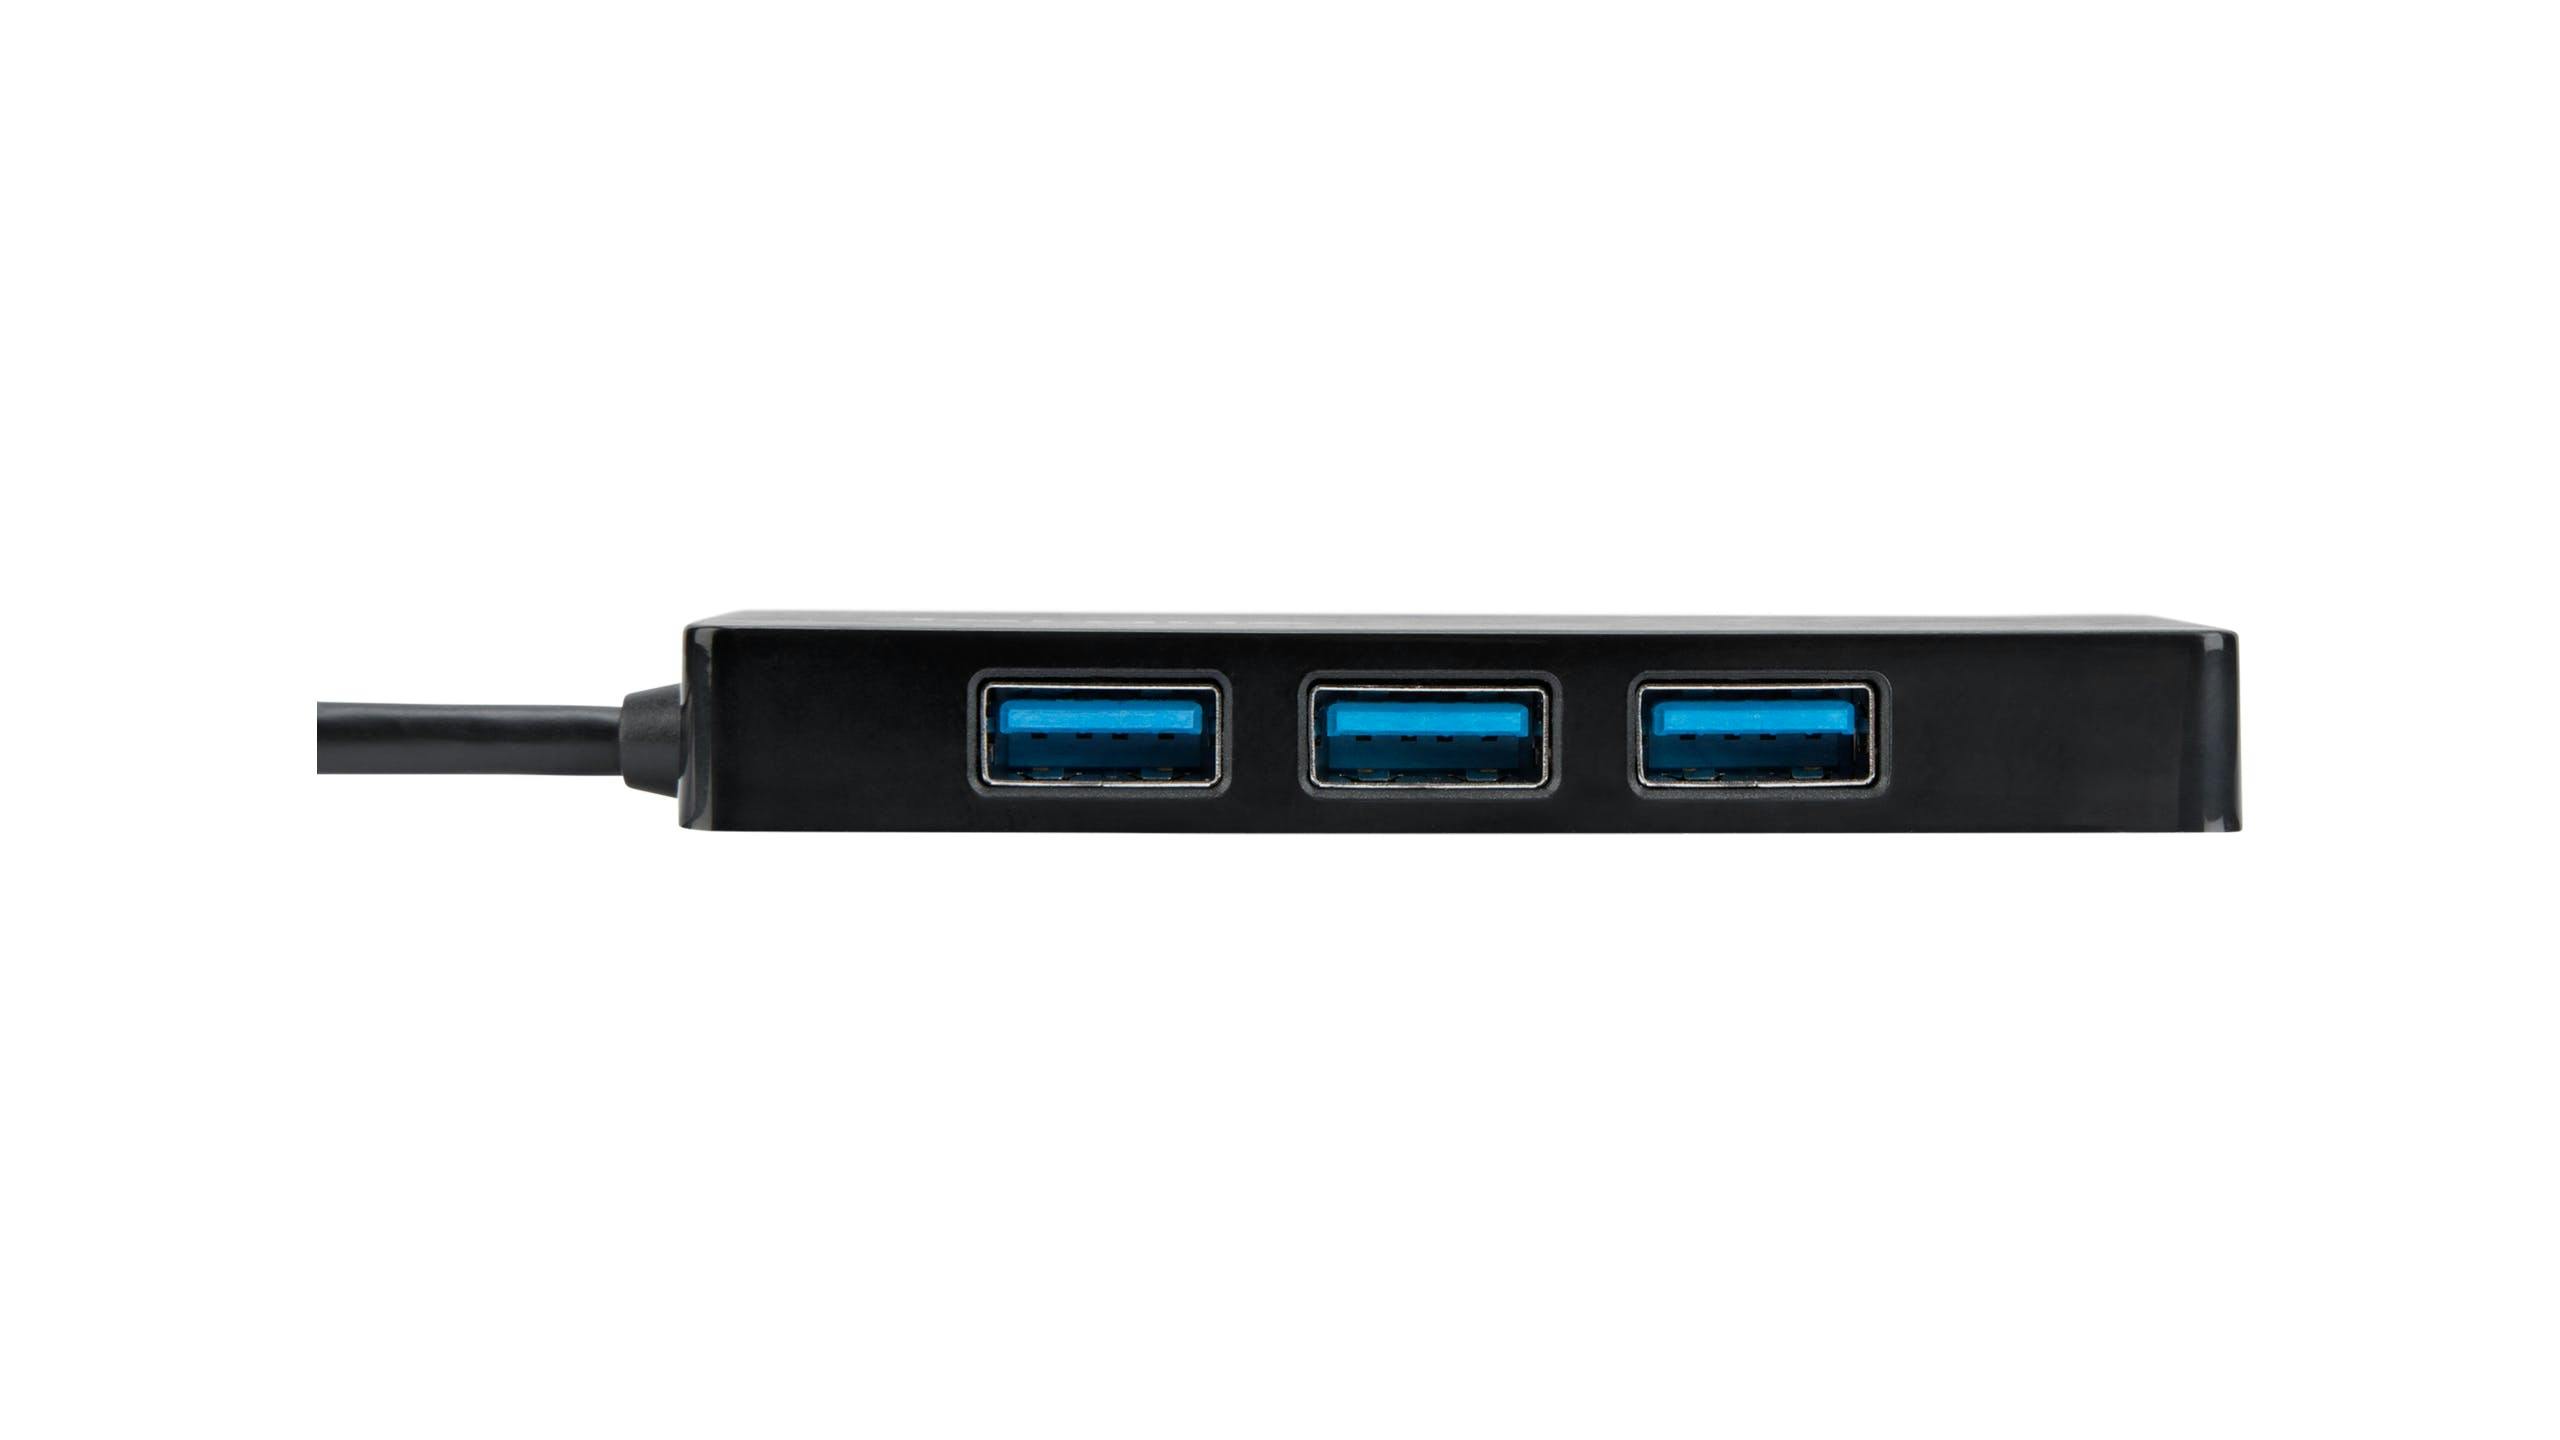 Targus USB 3.0 4-Port Hub